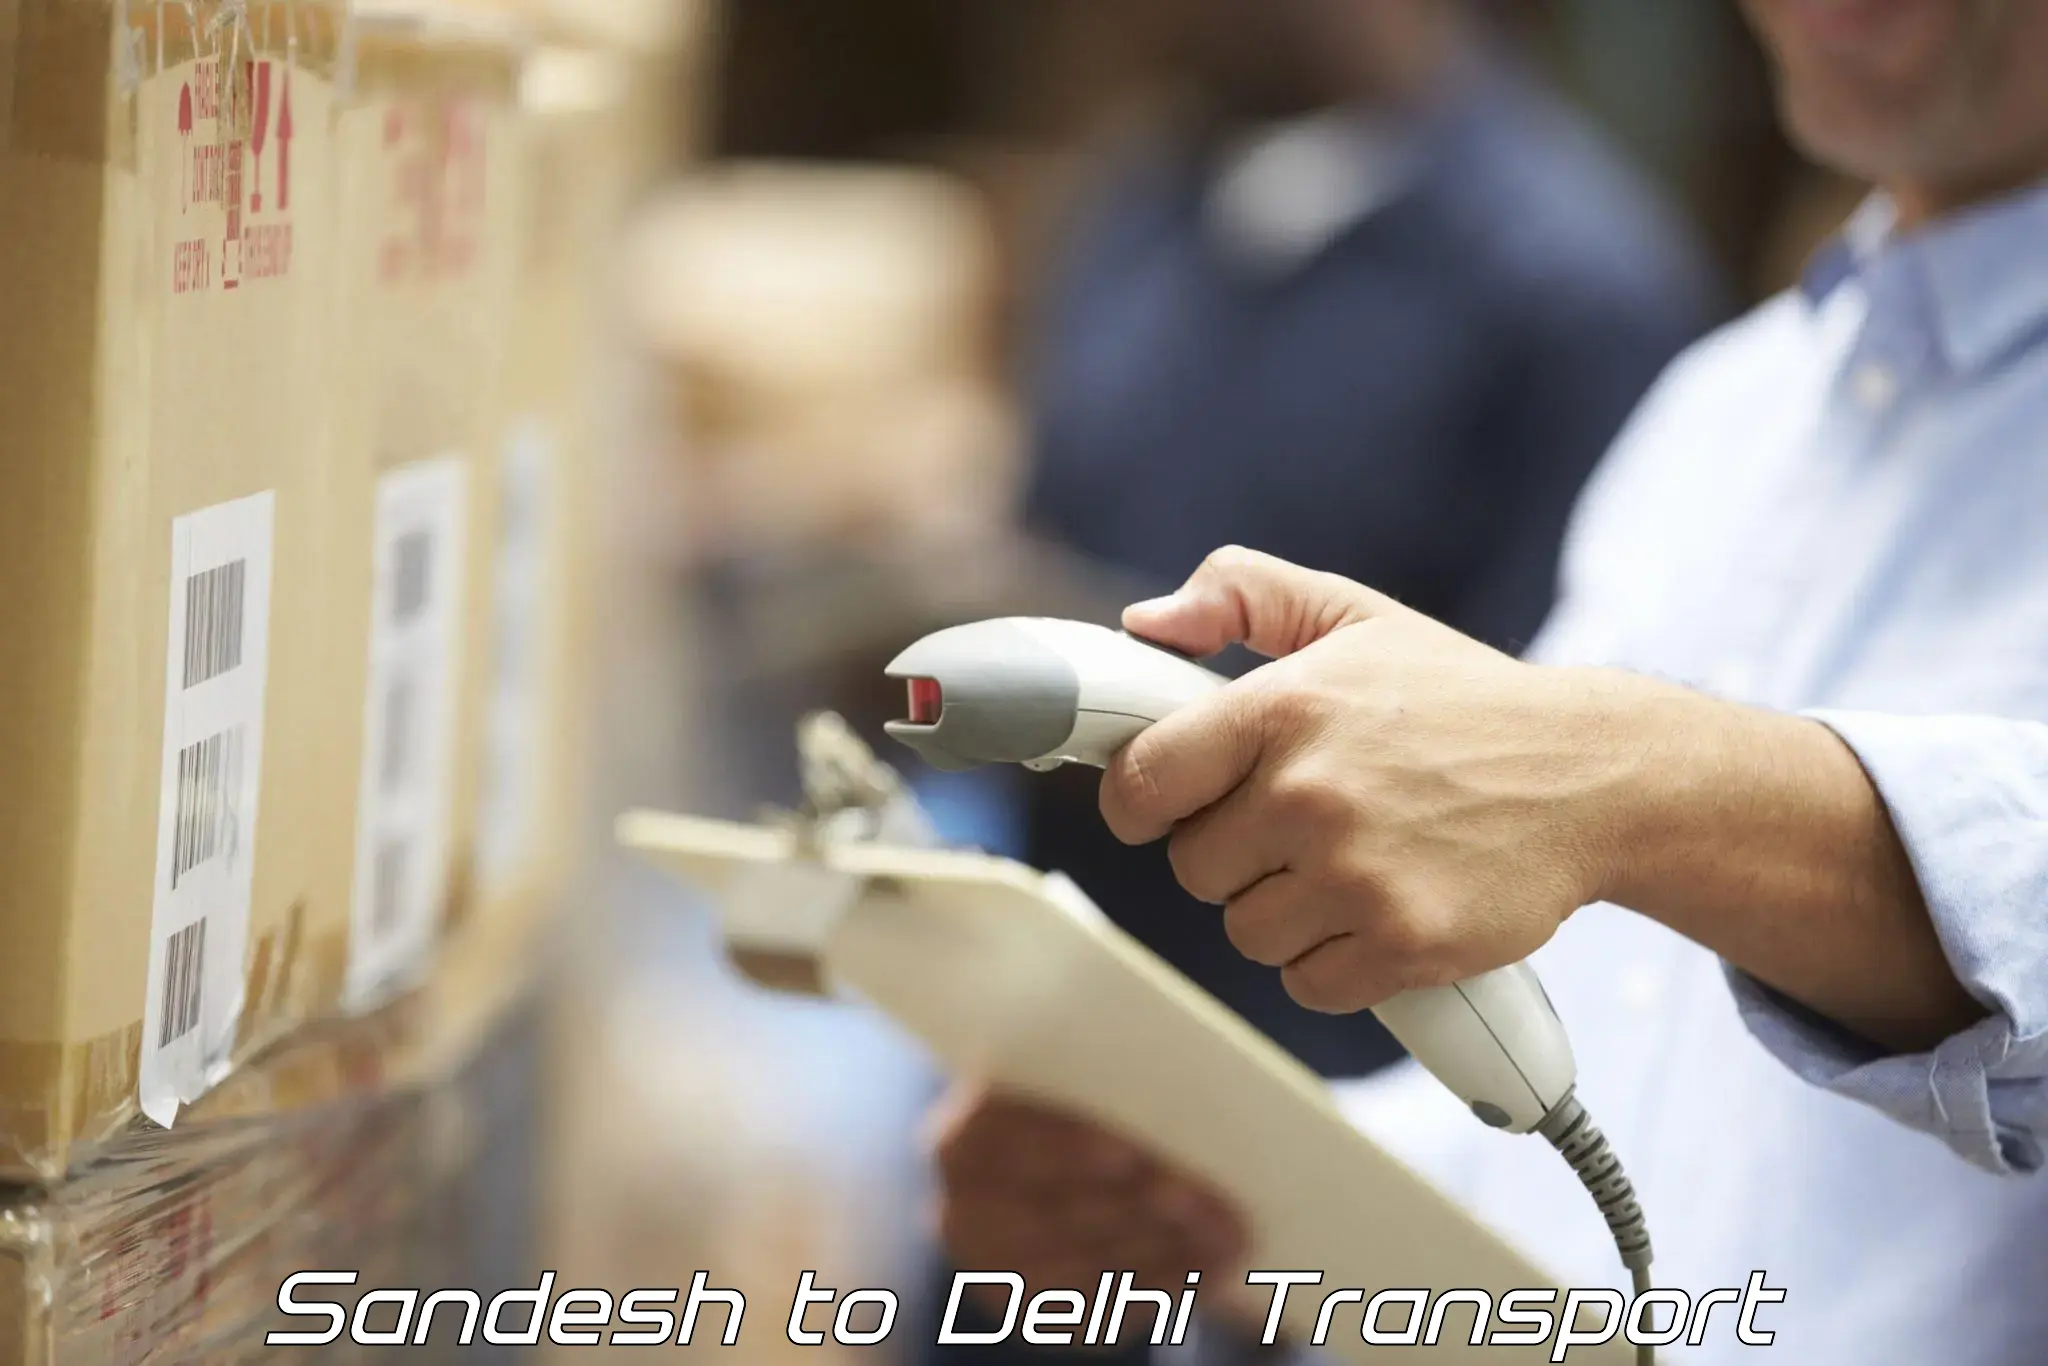 Furniture transport service Sandesh to NIT Delhi